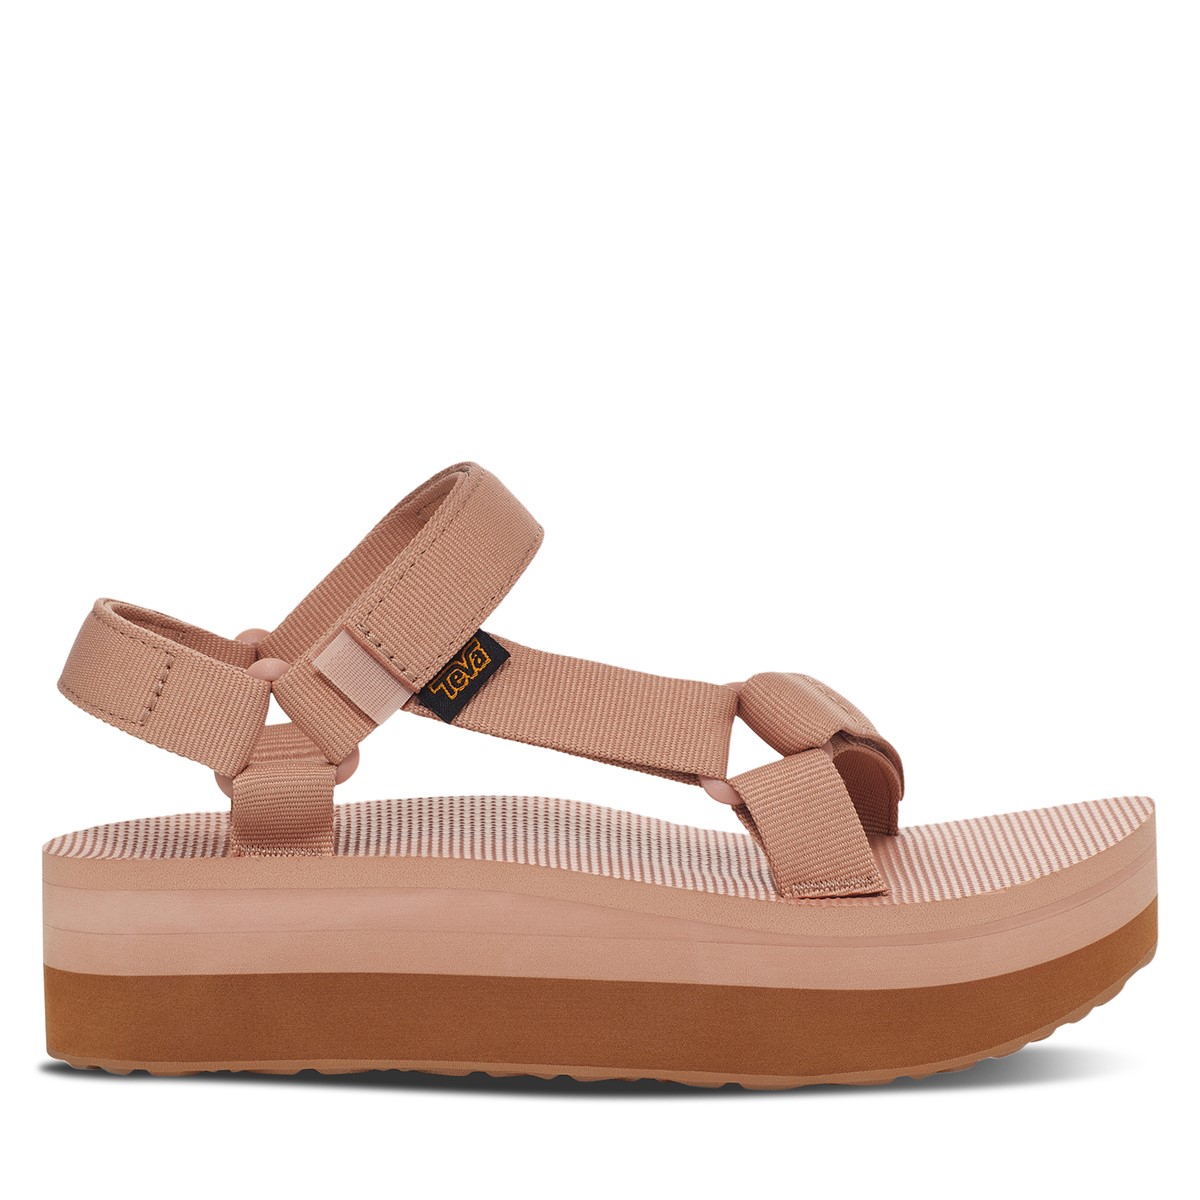 Women's Flatform Universal Platform Sandals in Maple